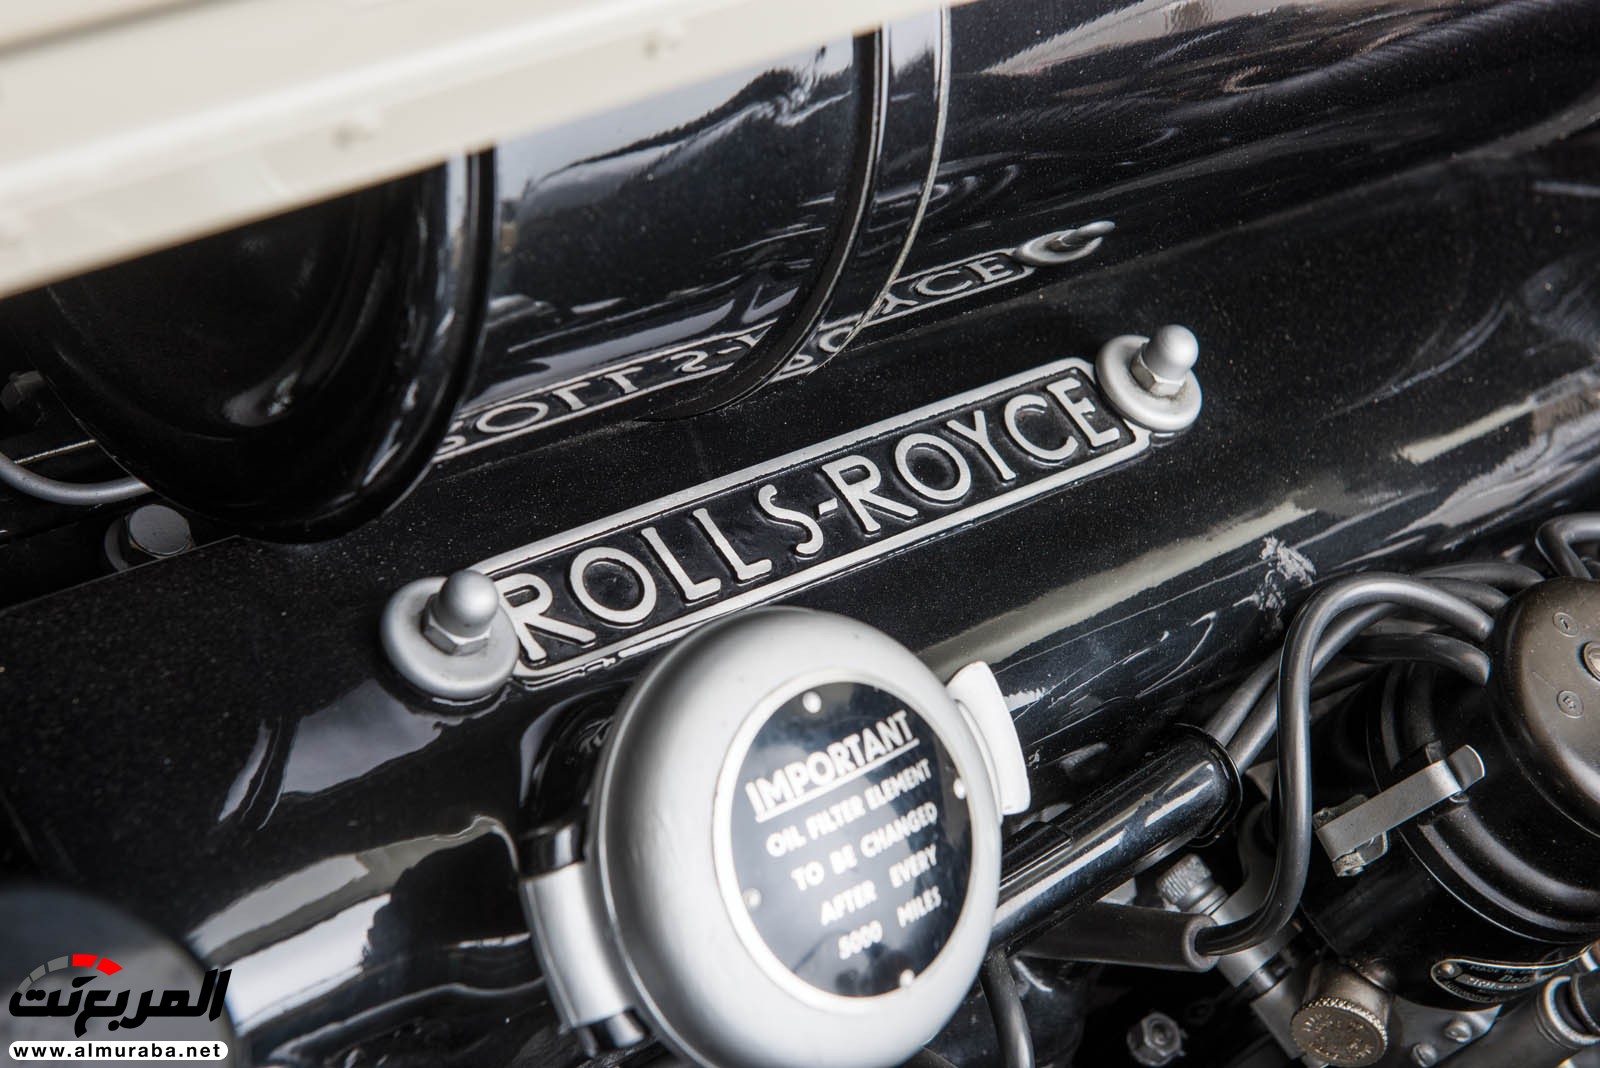 "رولز رويس" سيلفر كلاود 1959 ذات هيكلة الواجن تتوجه لتباع في مزاد عالمي Rolls-Royce Silver Cloud 91